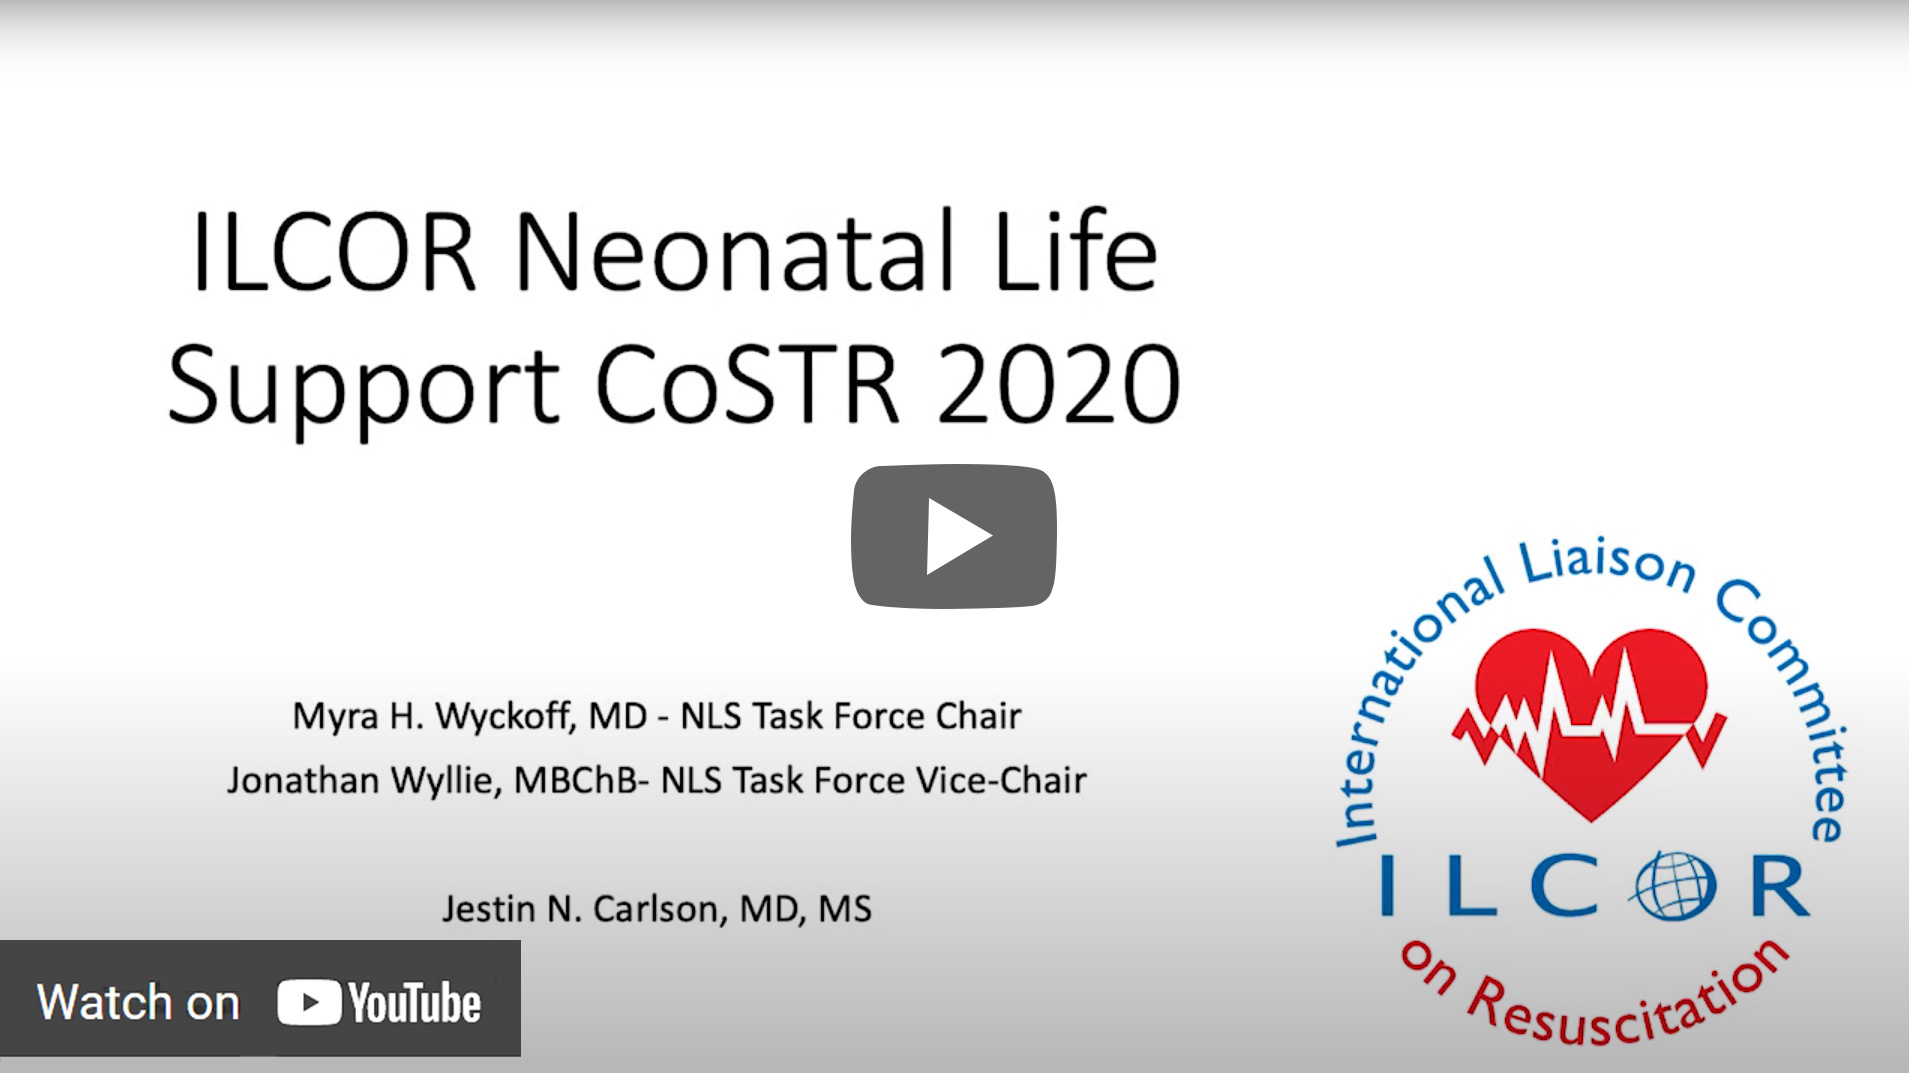 ILCOR Neonation Life Support CoSTR 2020 Video